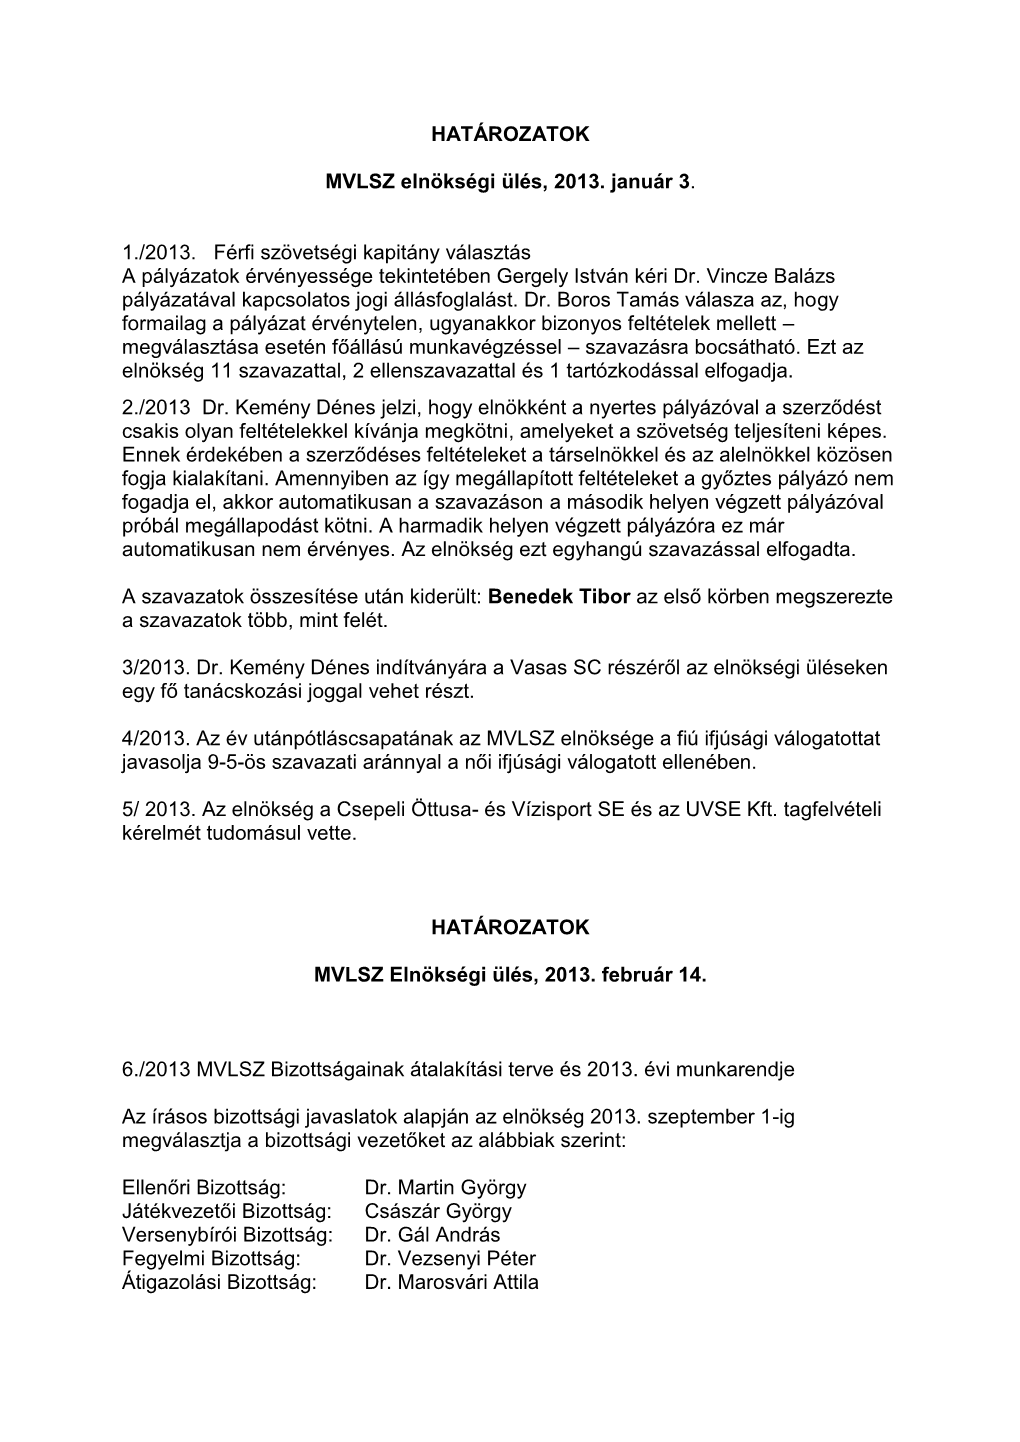 MVLSZ Elnökségi Határozatok 2013-2014-2015